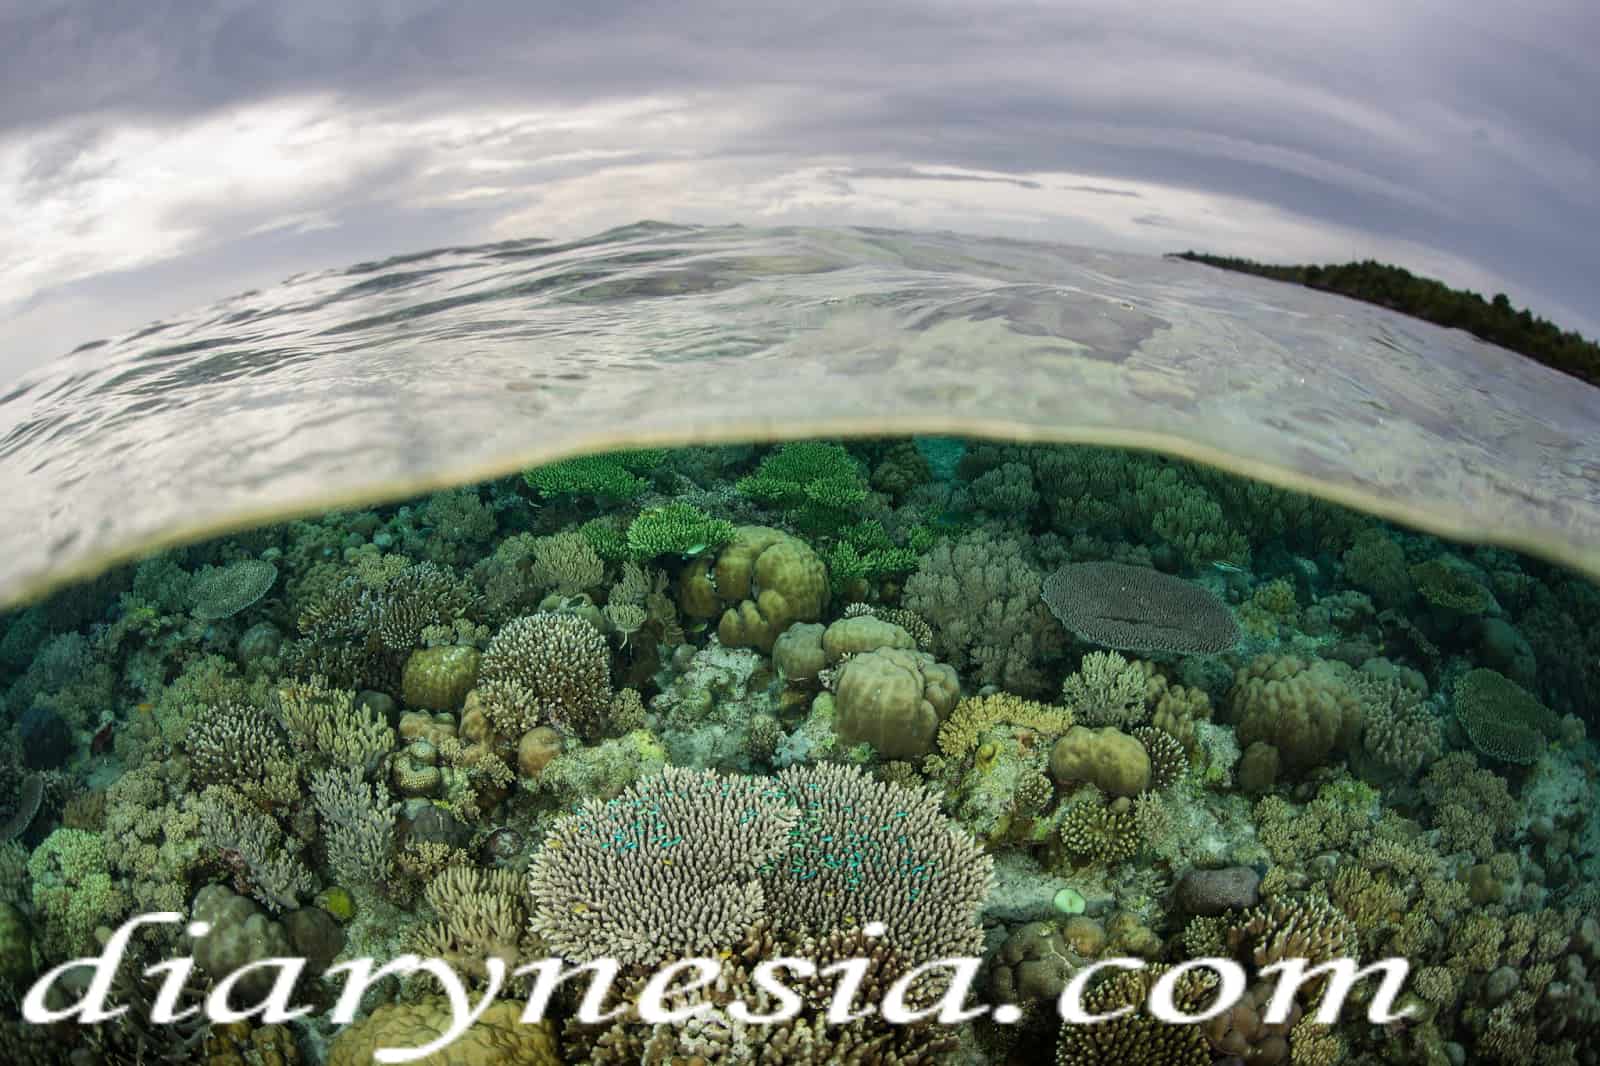 wakatobi tourism, South East Sulawesi, Wakatobi tourist attraction, diarynesia